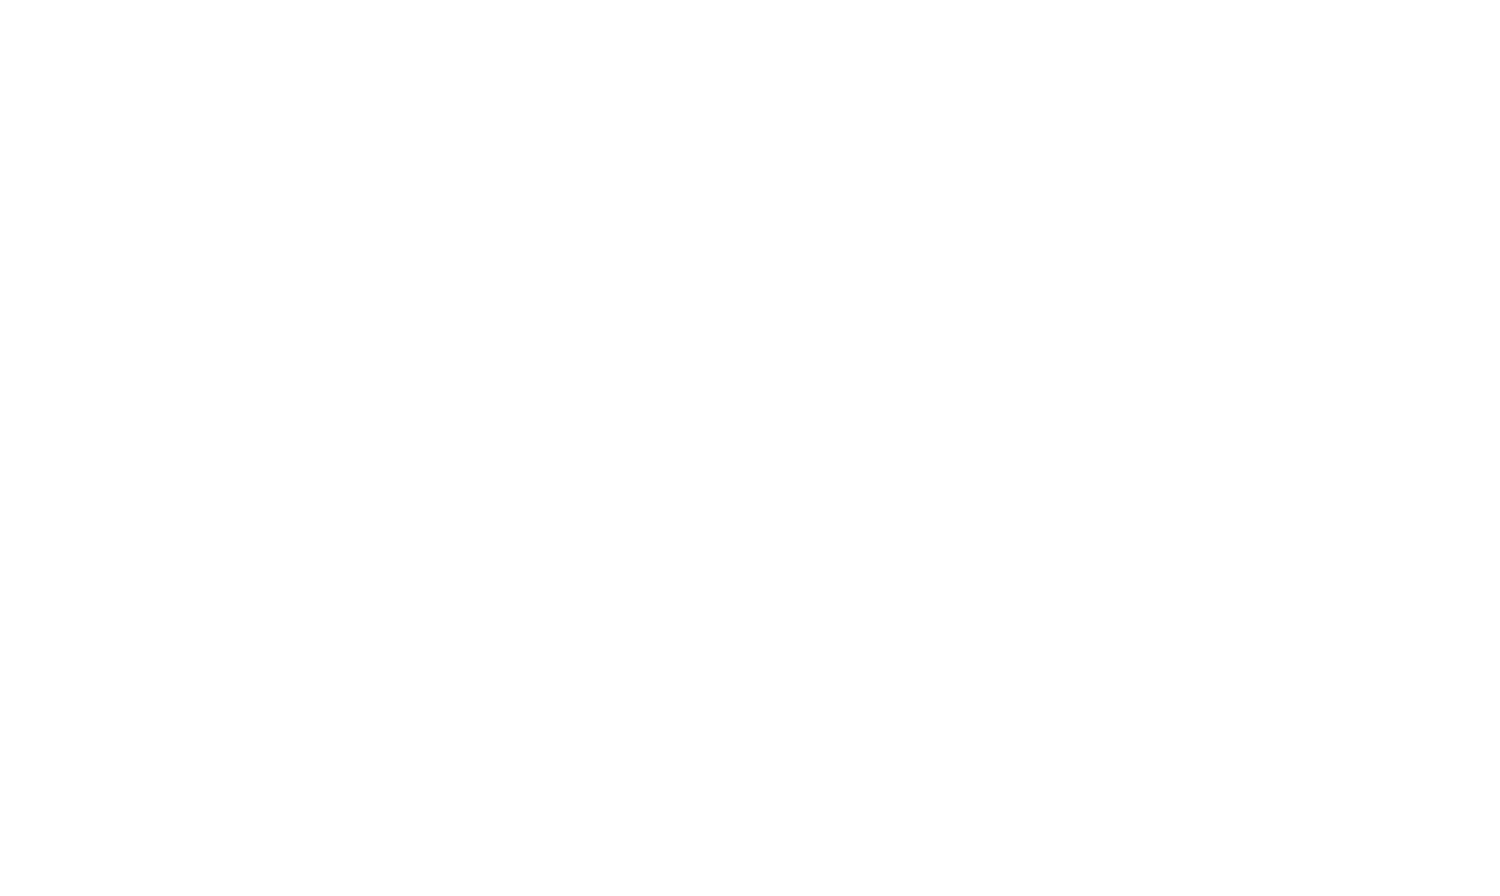 Hespos.com